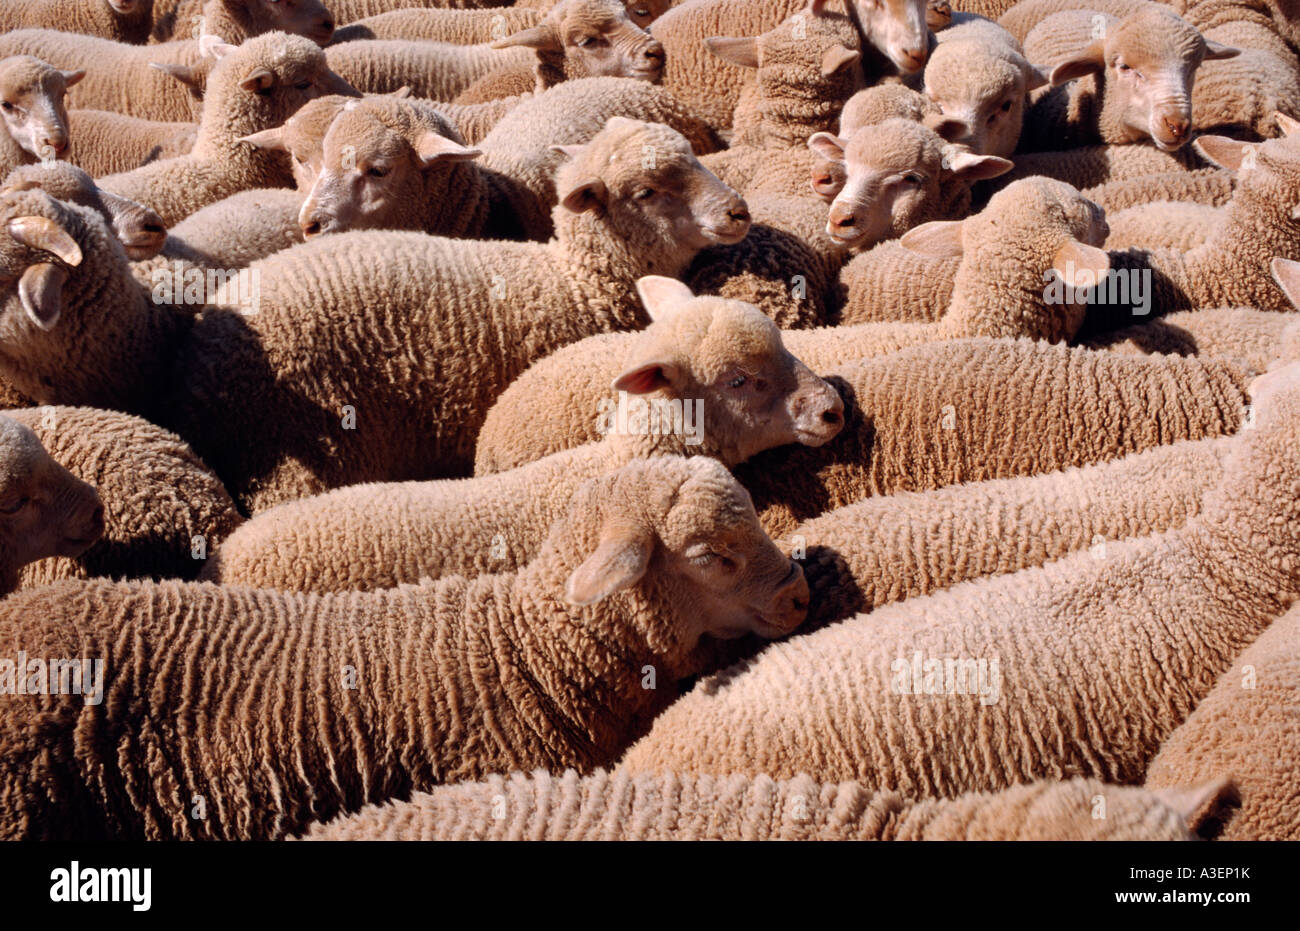 Merino sheep in yards Australia horizontal Stock Photo